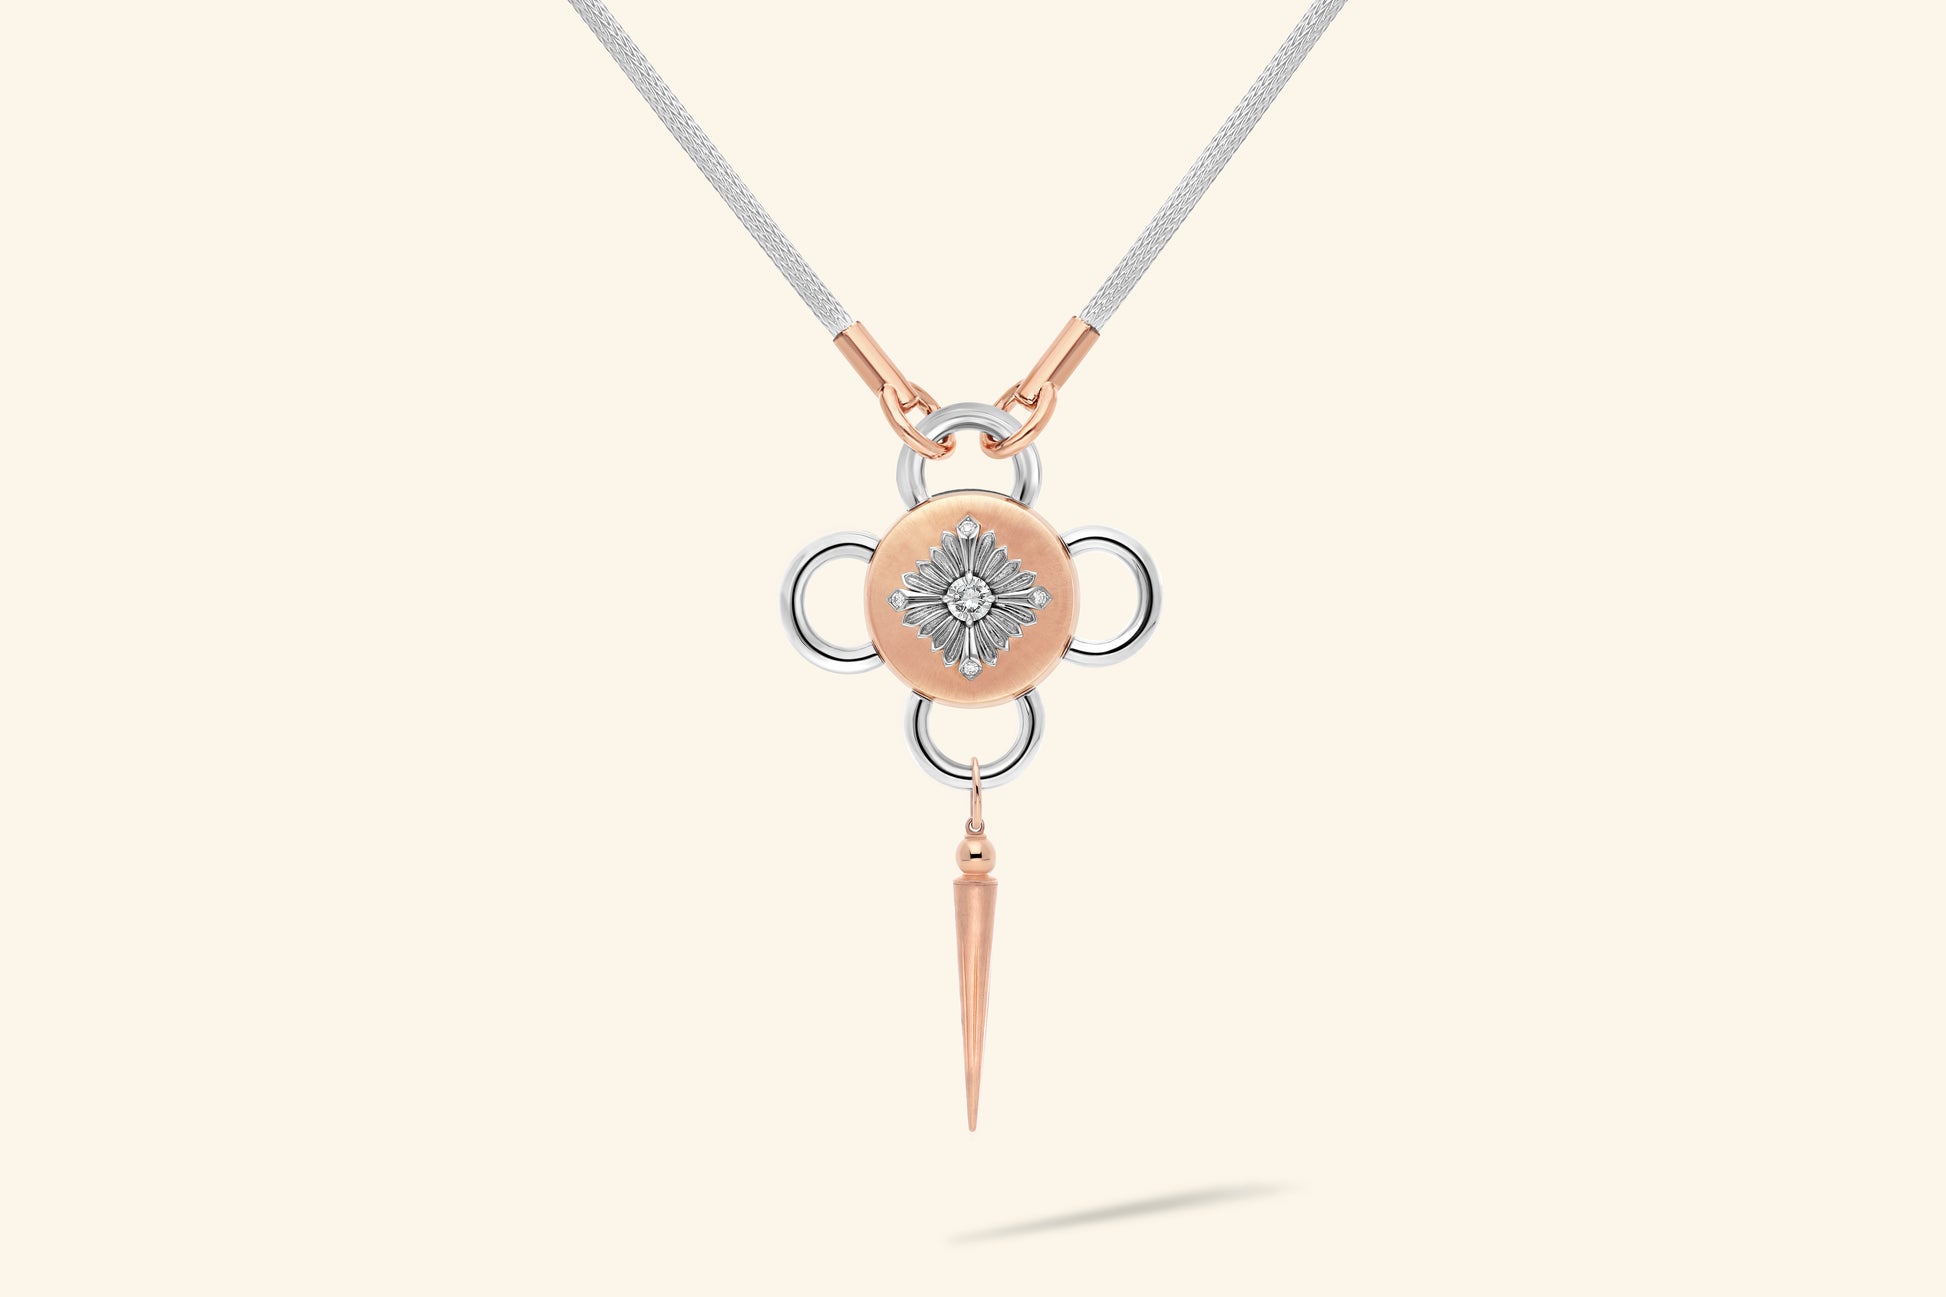 Collier Bolt, diamant de ~0,55 carat serti sur une fleur en argent poli, décorée de 4 diamants pour ~0,04 carat et posée sur un plateau en or rose satiné. Chaine tricotée en argent, manchons en or rose poli.